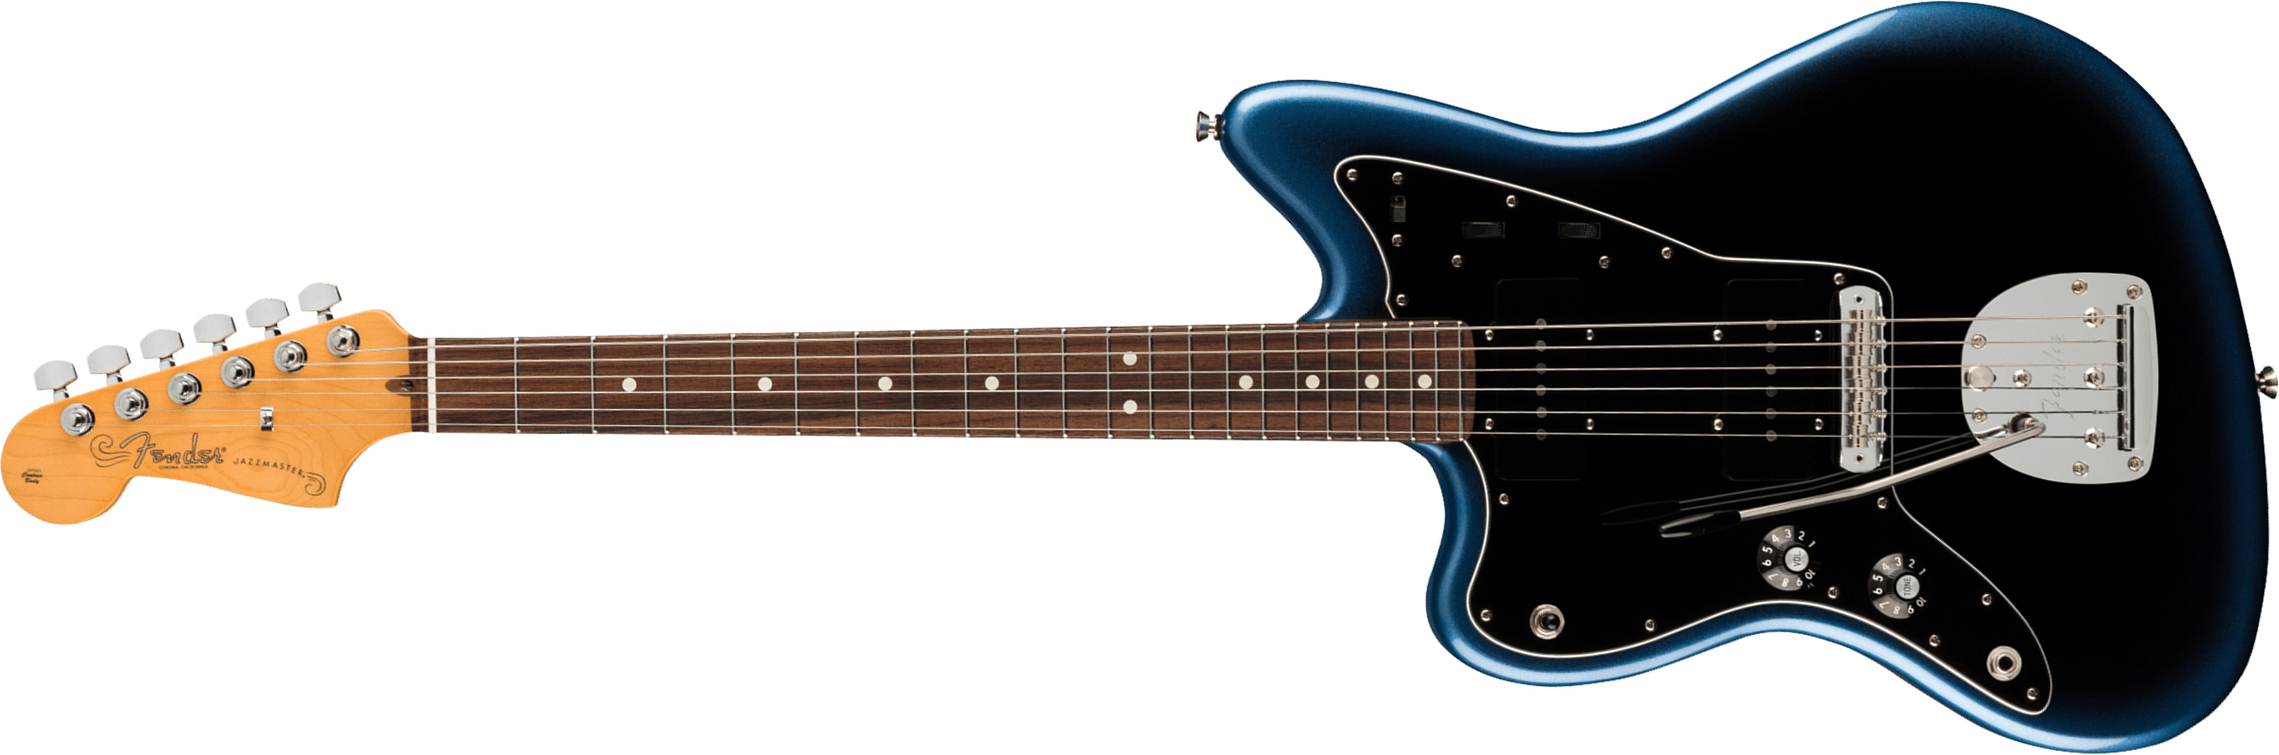 Fender Jazzmaster American Professional Ii Lh Gaucher Usa Rw - Dark Night - Guitarra electrica para zurdos - Main picture